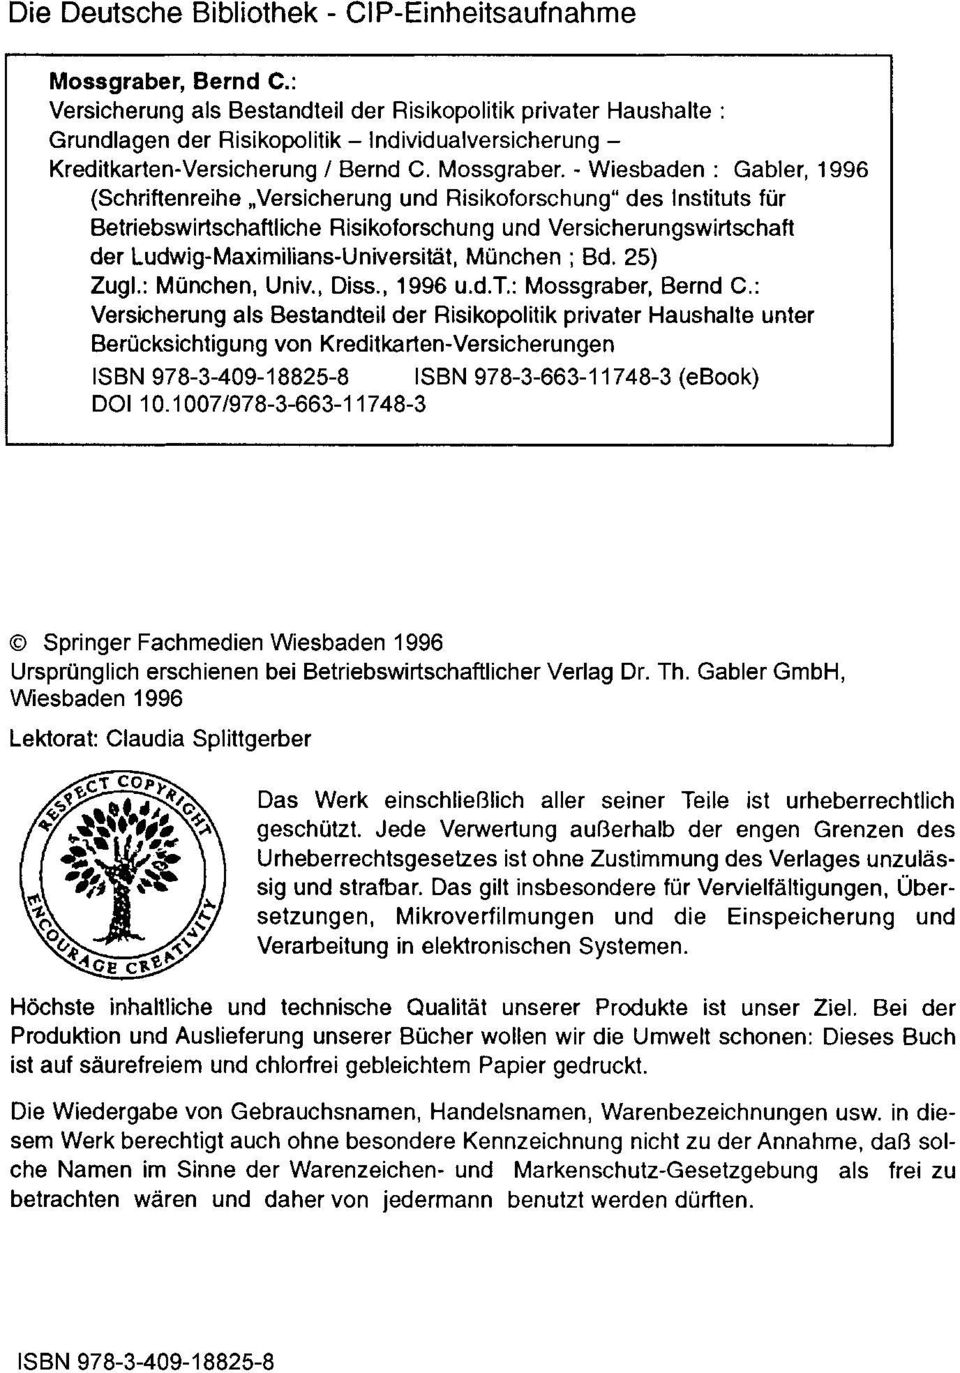 - Wiesbaden: Gabler, 1996 (Schriften reihe "Versicherung und Risikoforschung" des Instituts für Betriebswirtschaftliche Risikoforschung und Versicherungswirtschaft der Ludwig-Maximilians-Universität,